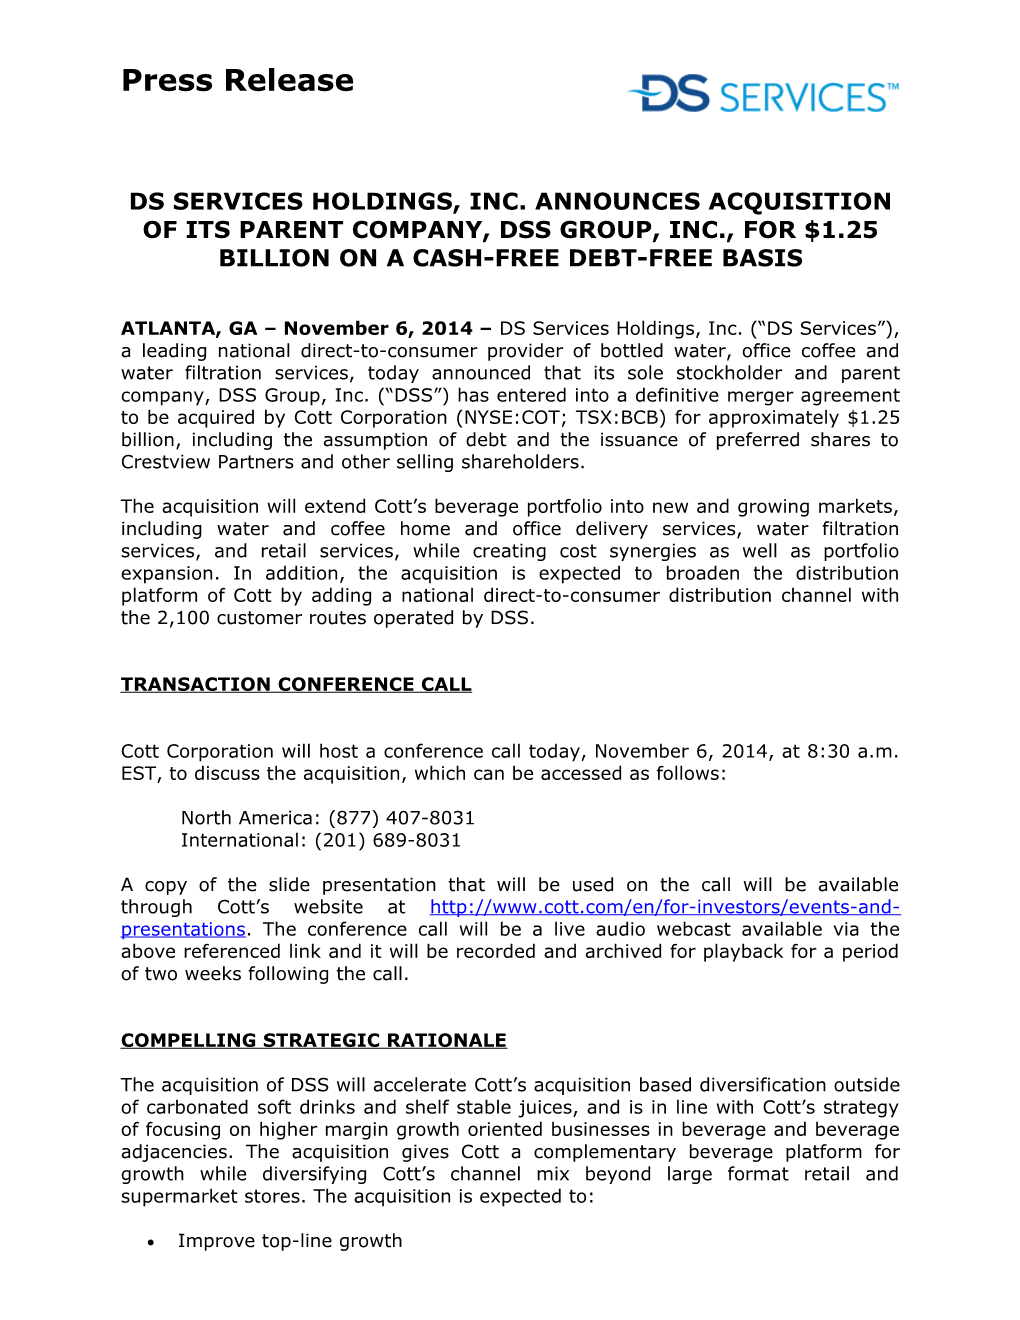 Ds Services Holdings, Inc. Announces Acquisition of Its Parent Company, Dss Group, Inc